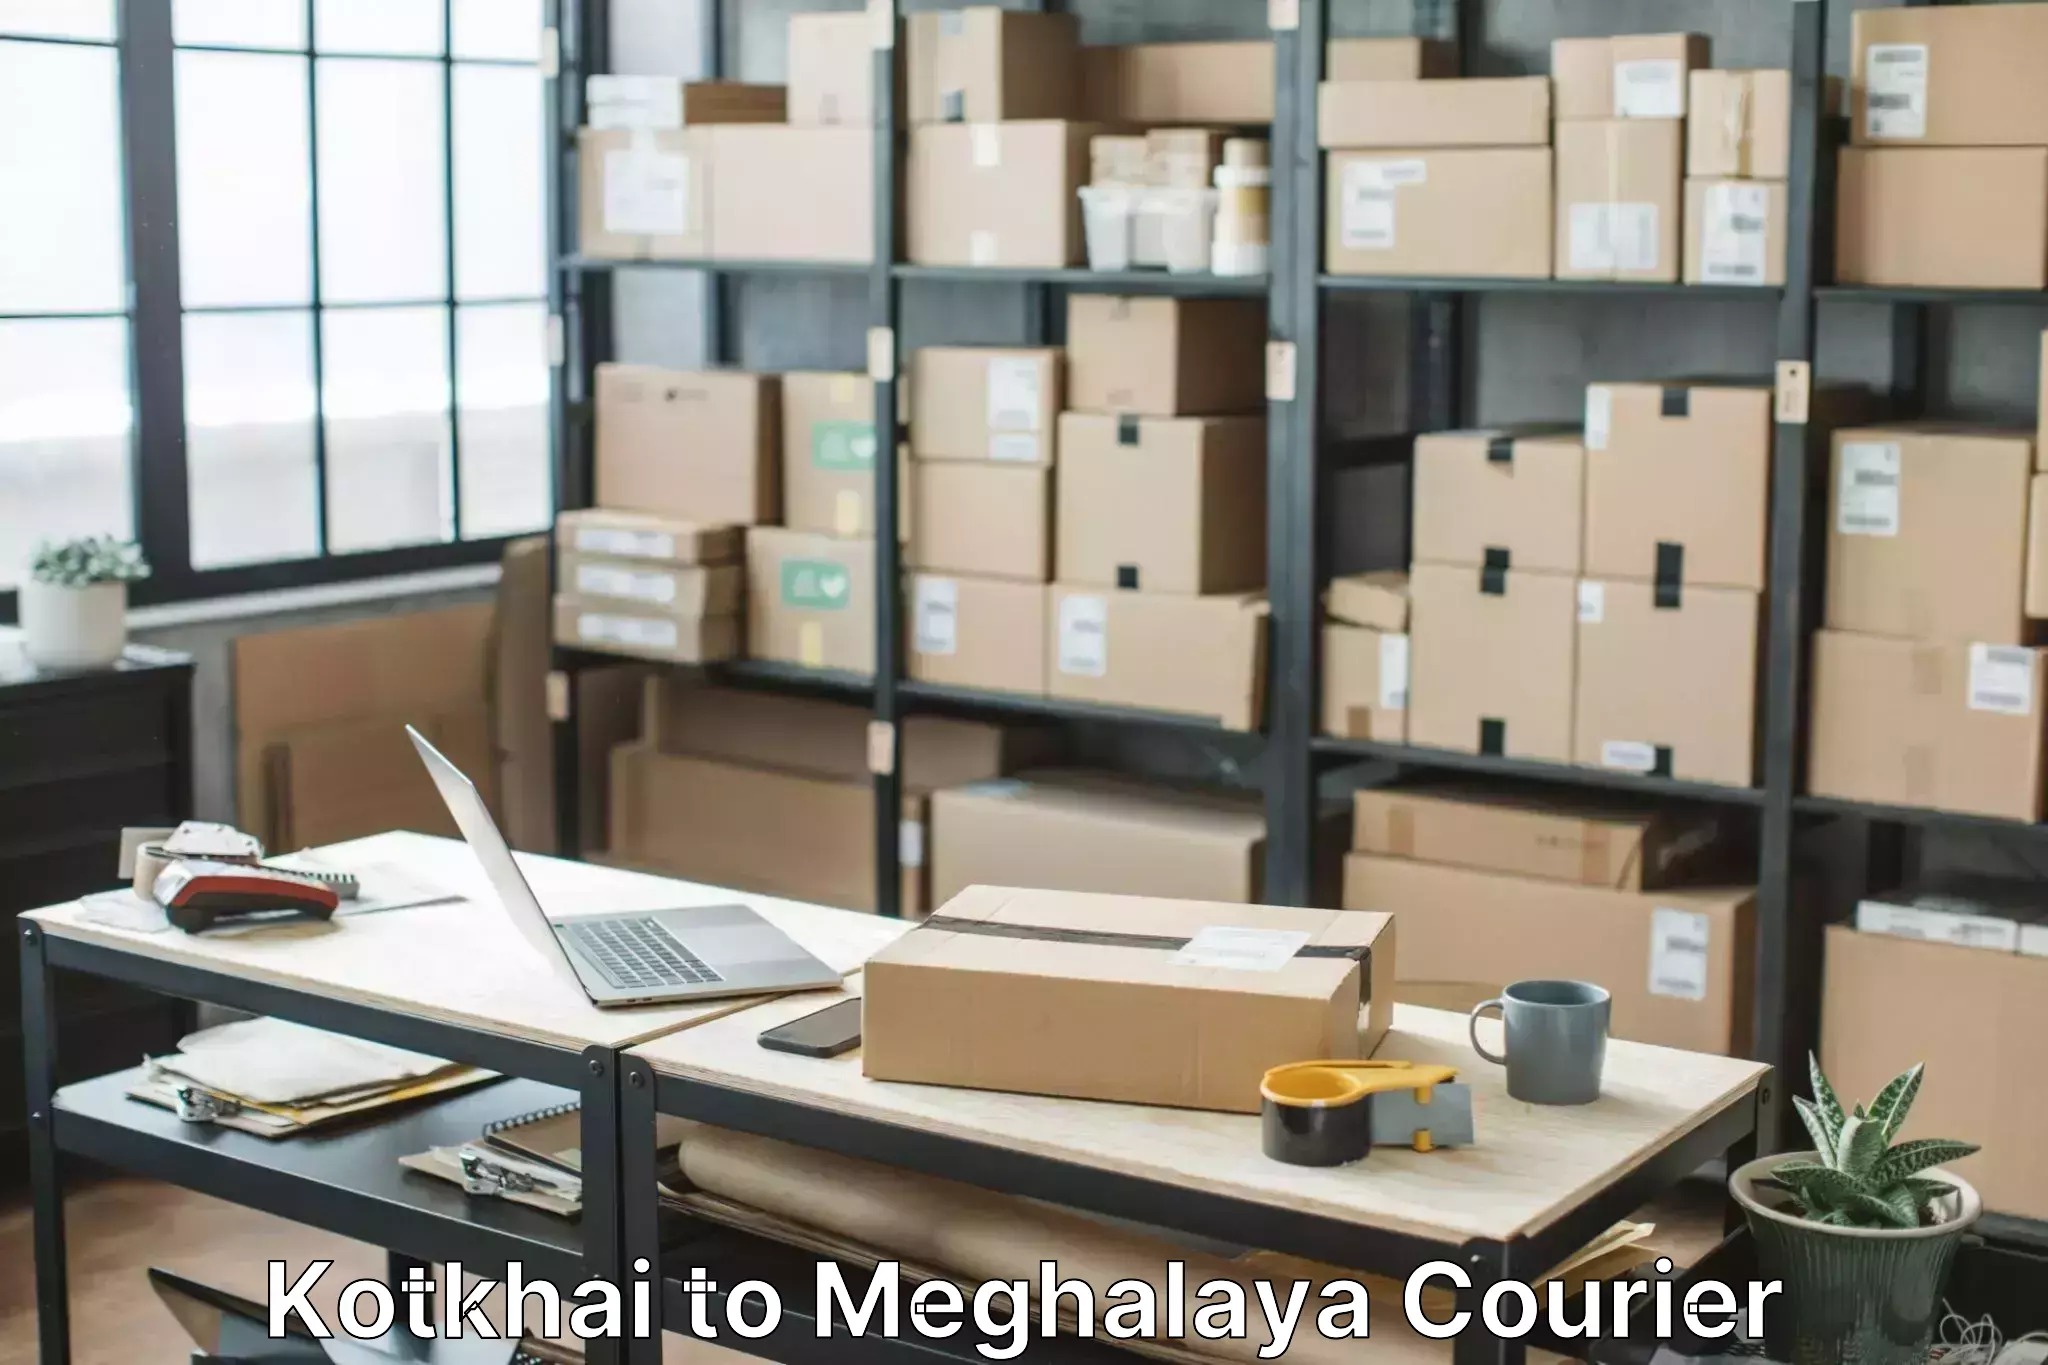 Furniture moving experts Kotkhai to Meghalaya